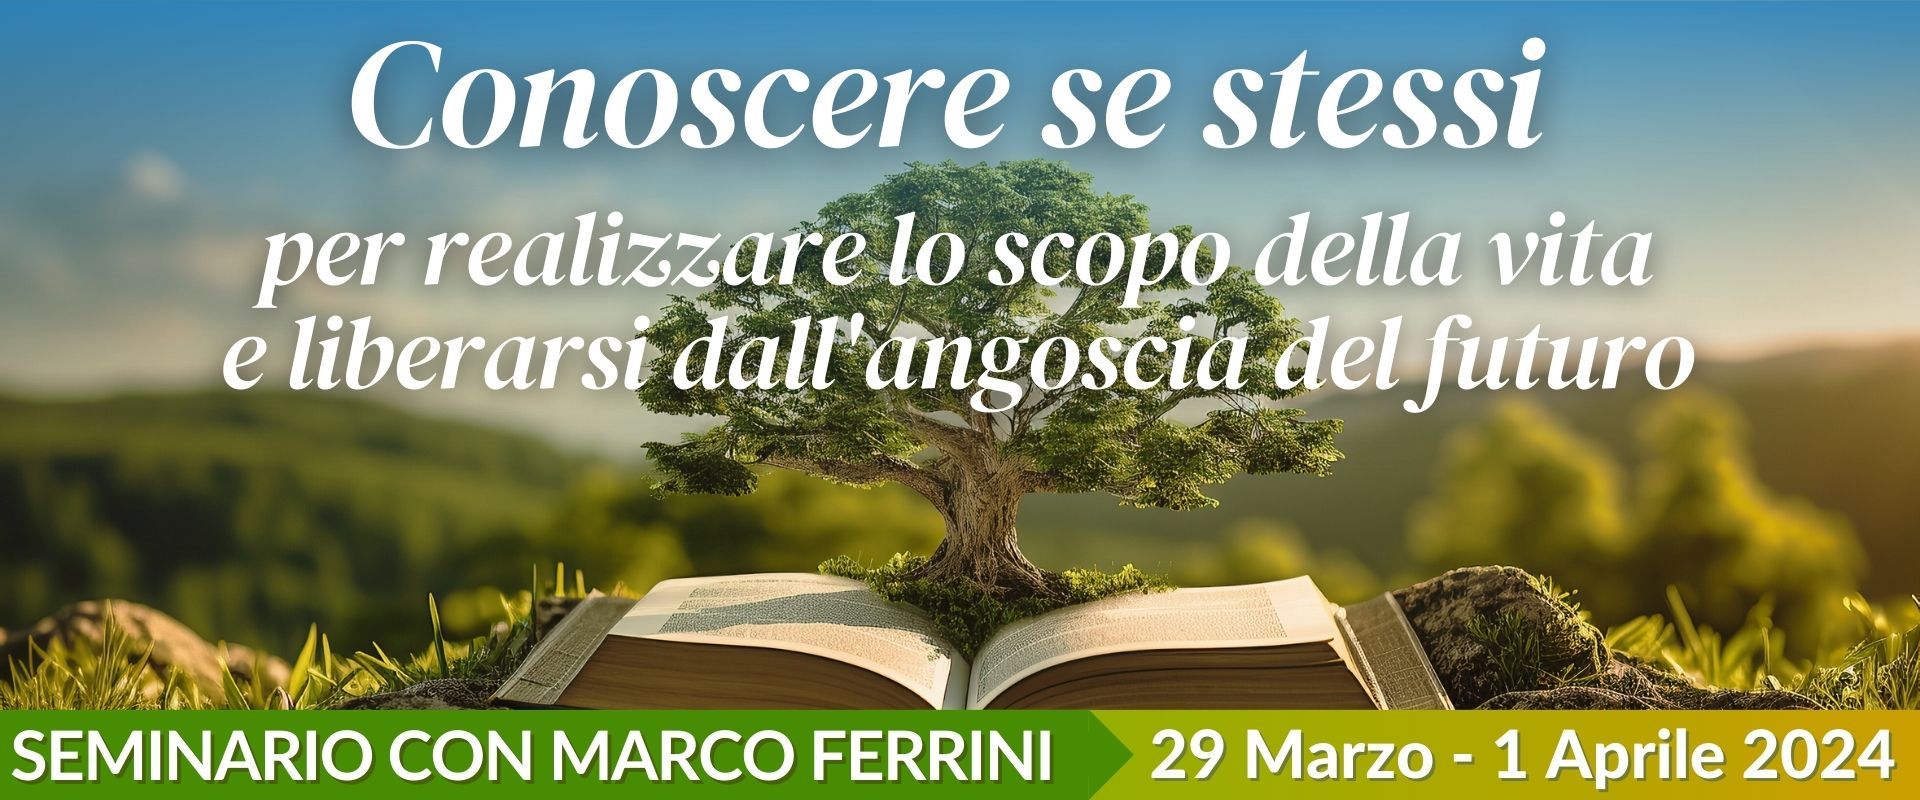 Seminario di Marco Ferrini - 29 marzo - 1 aprile 2024